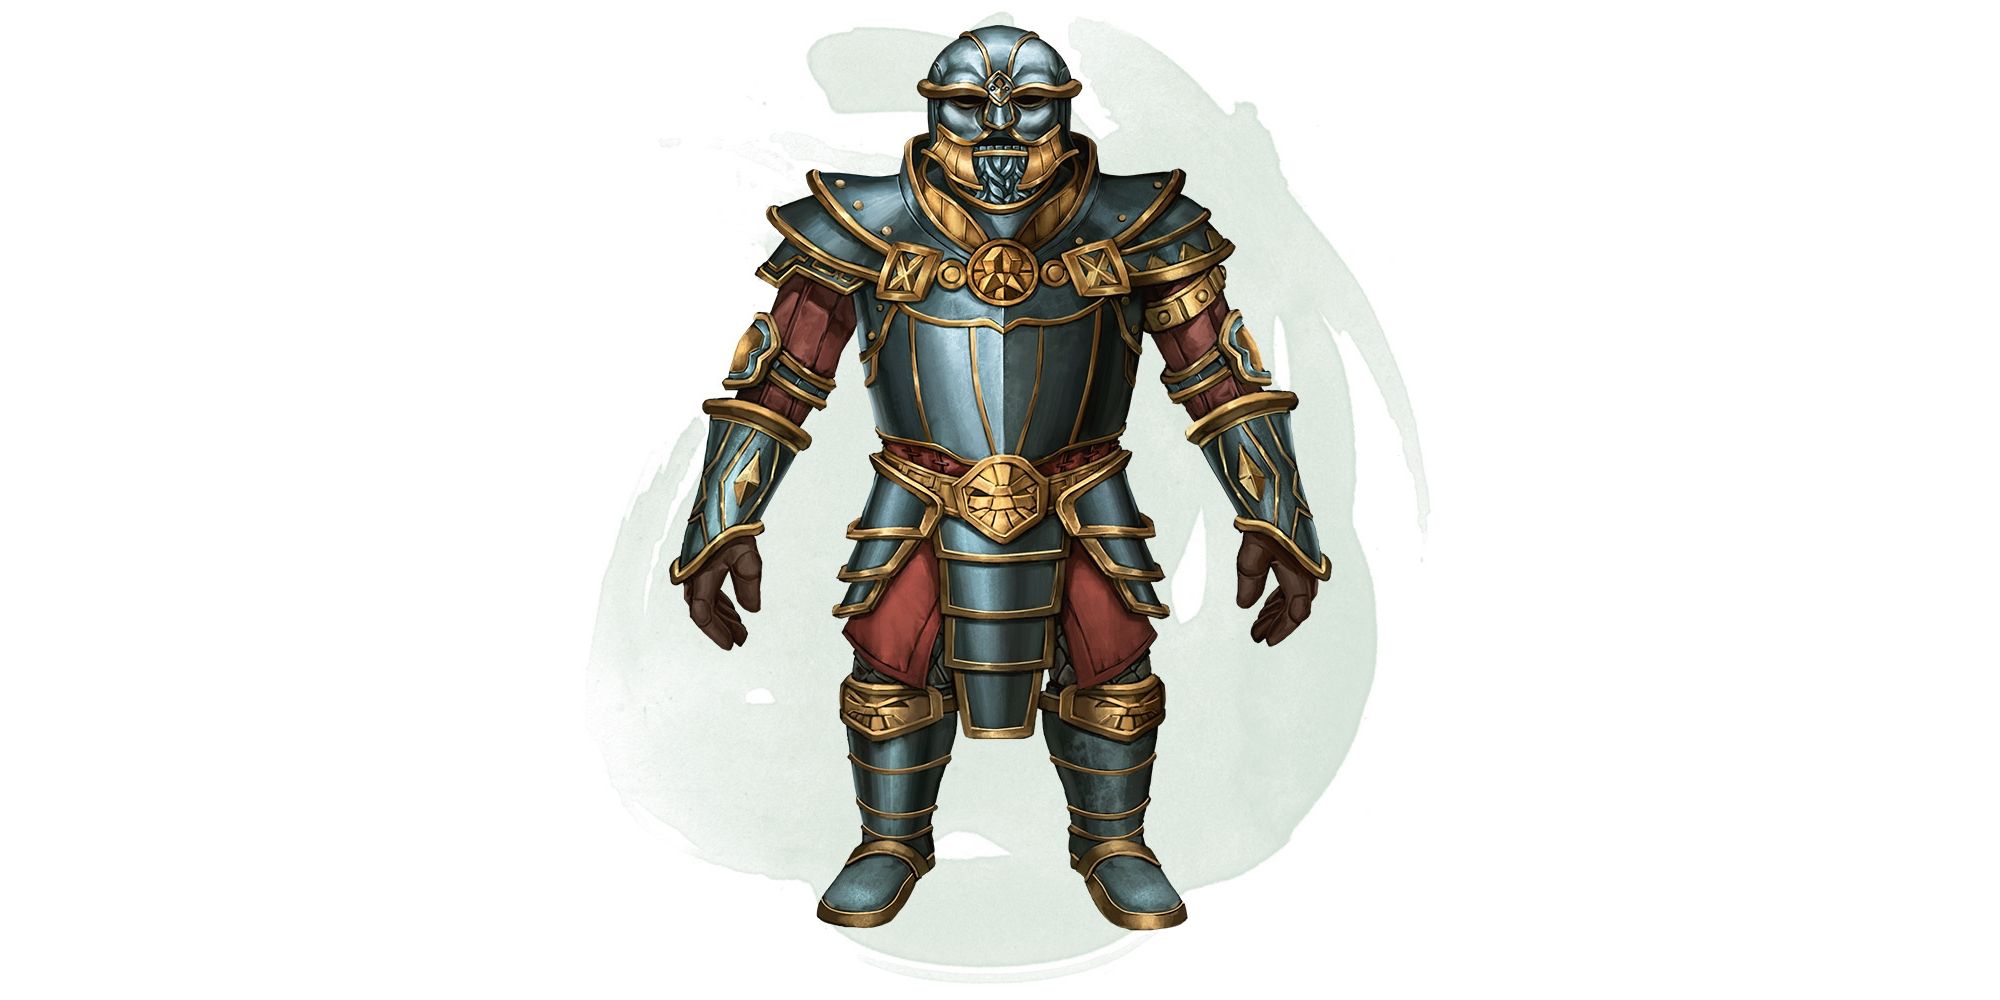 Armor Kebal dari DnD, dengan pelat kebiruan dan emas.